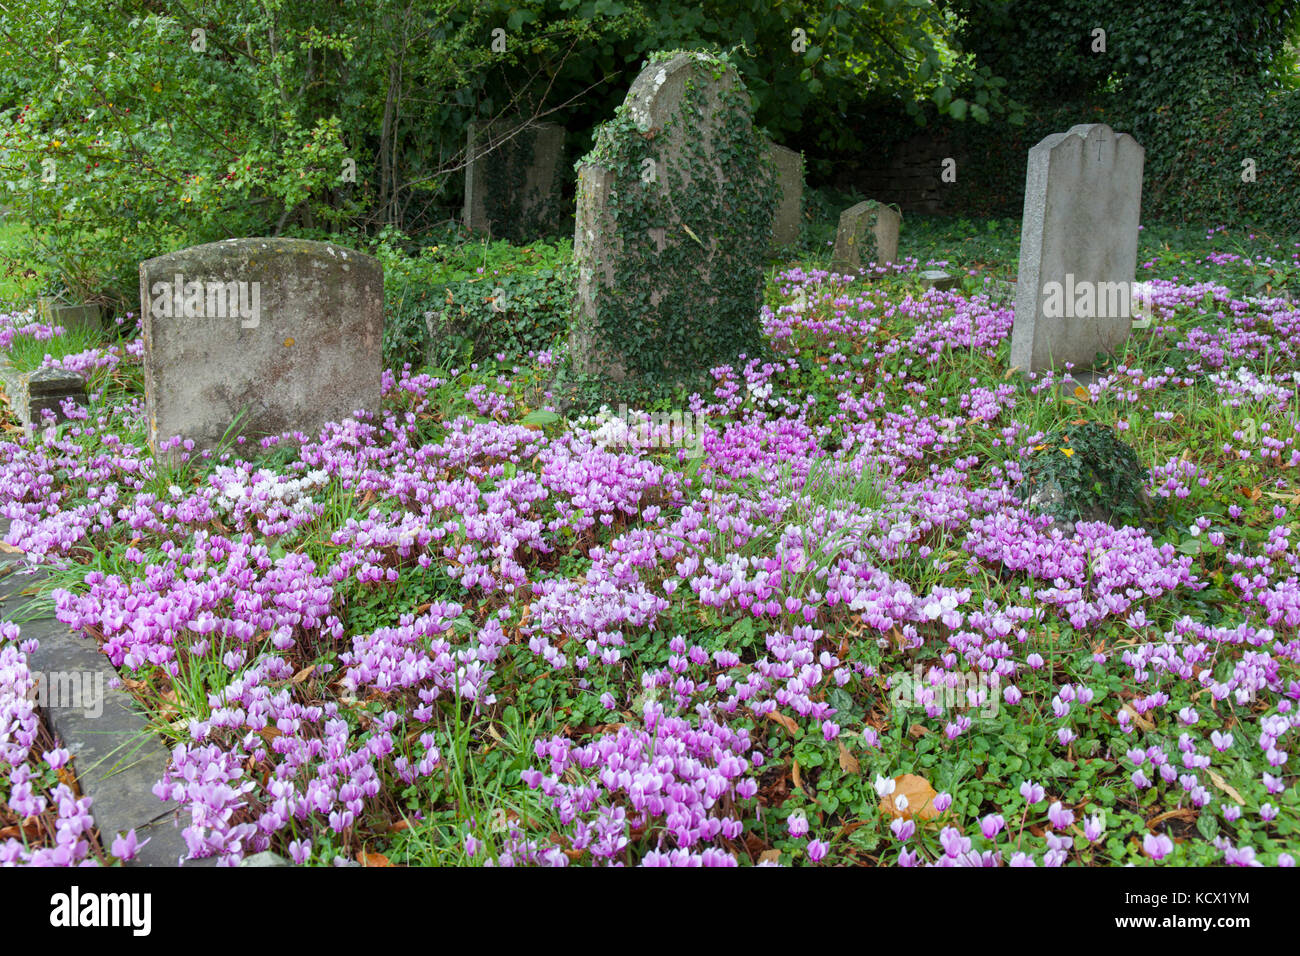 Cyclamen poussant à l'état sauvage dans le cimetière, Chipping Campden, Cotswolds, Gloucestershire, Angleterre, Royaume-Uni, Europe Banque D'Images